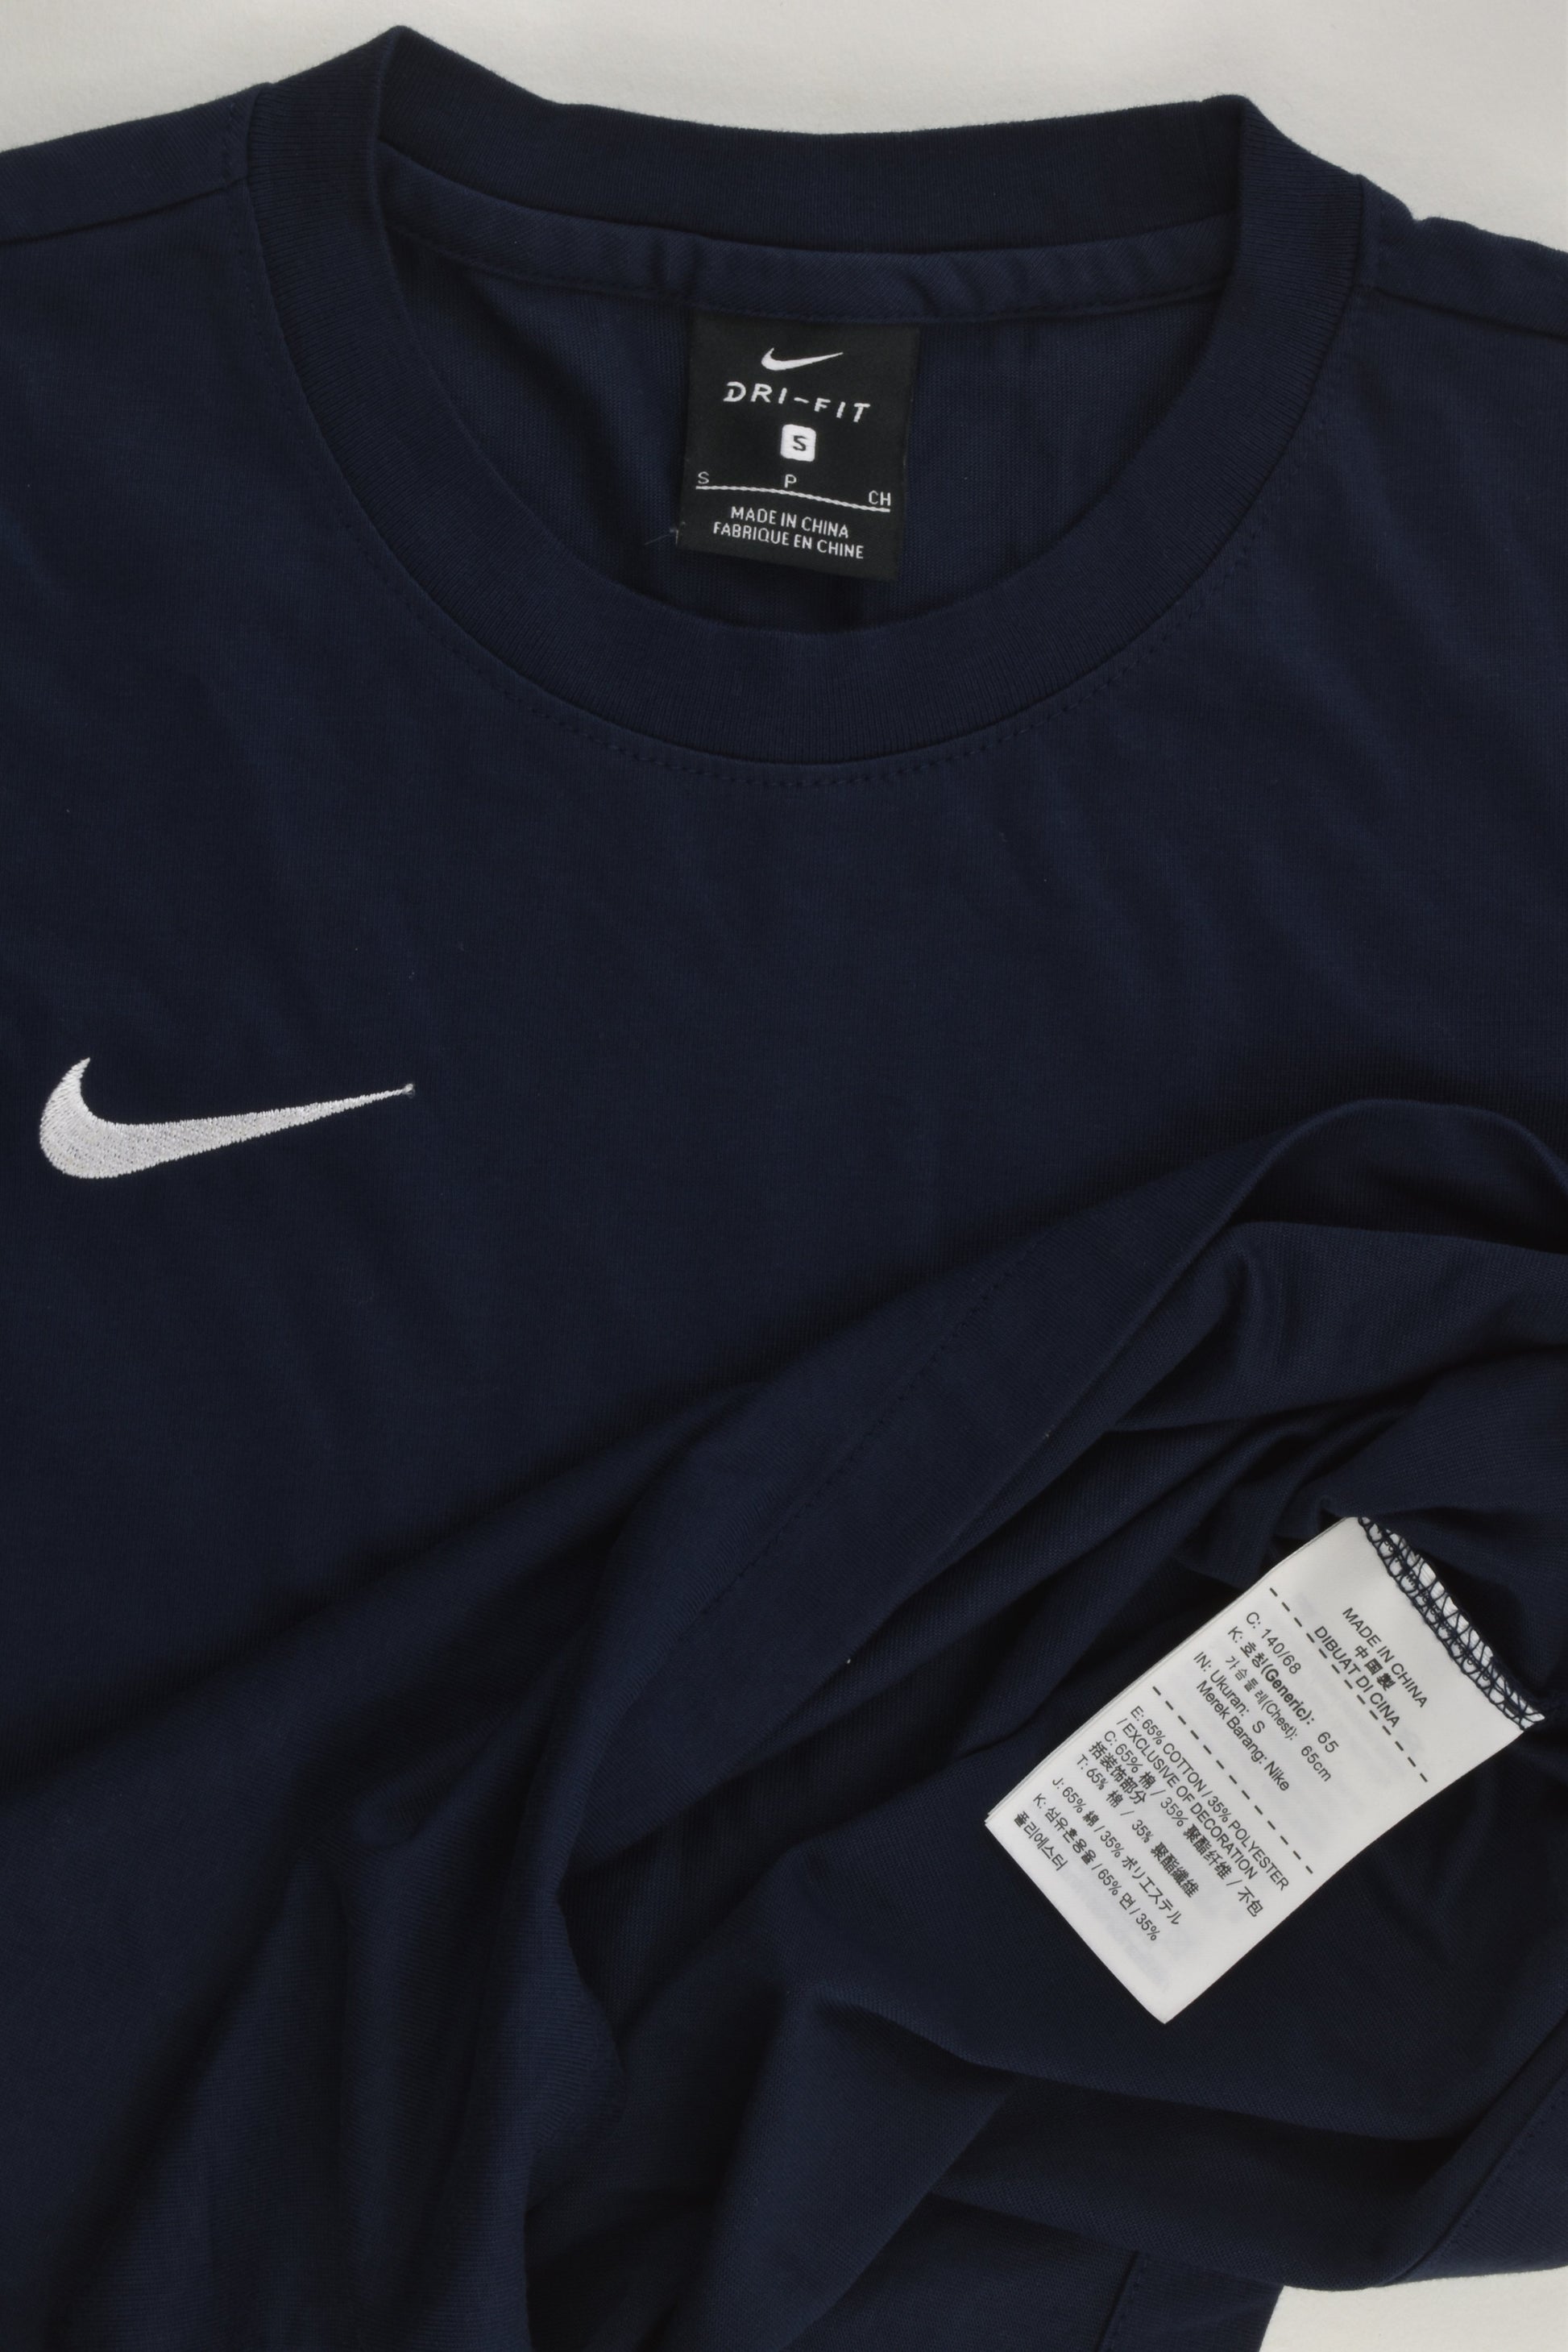 Nike Size 8-9 (S) Dri-Fit T-shirt